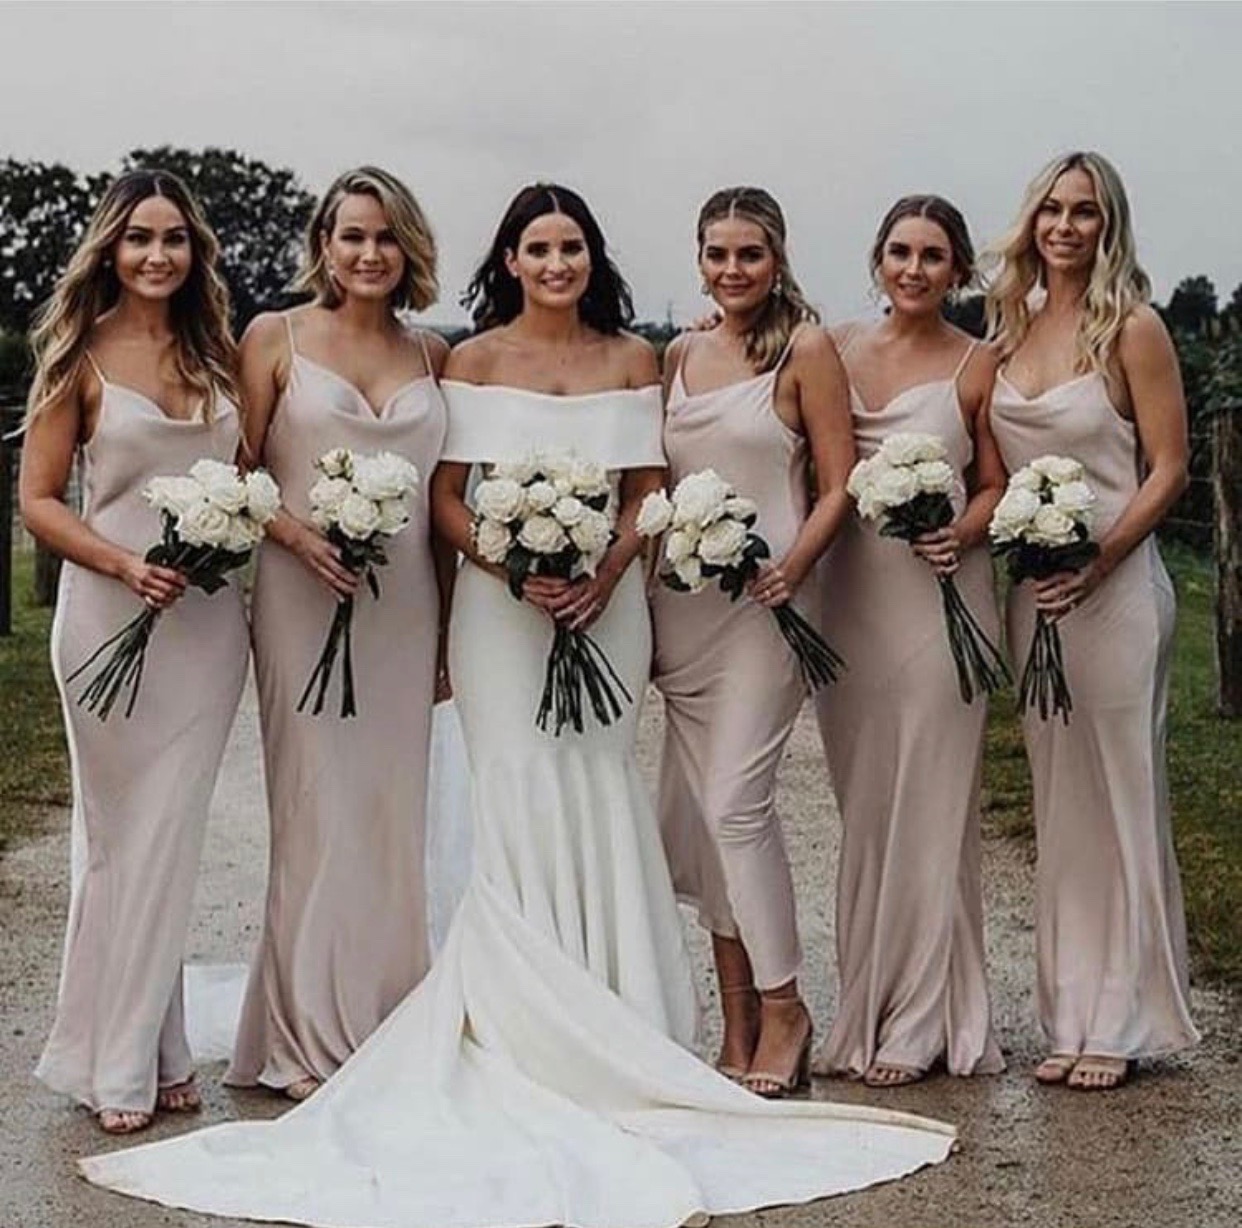 Shona Joy Luxe Bridesmaids Dress Range! - Fashionably Yours Bridal